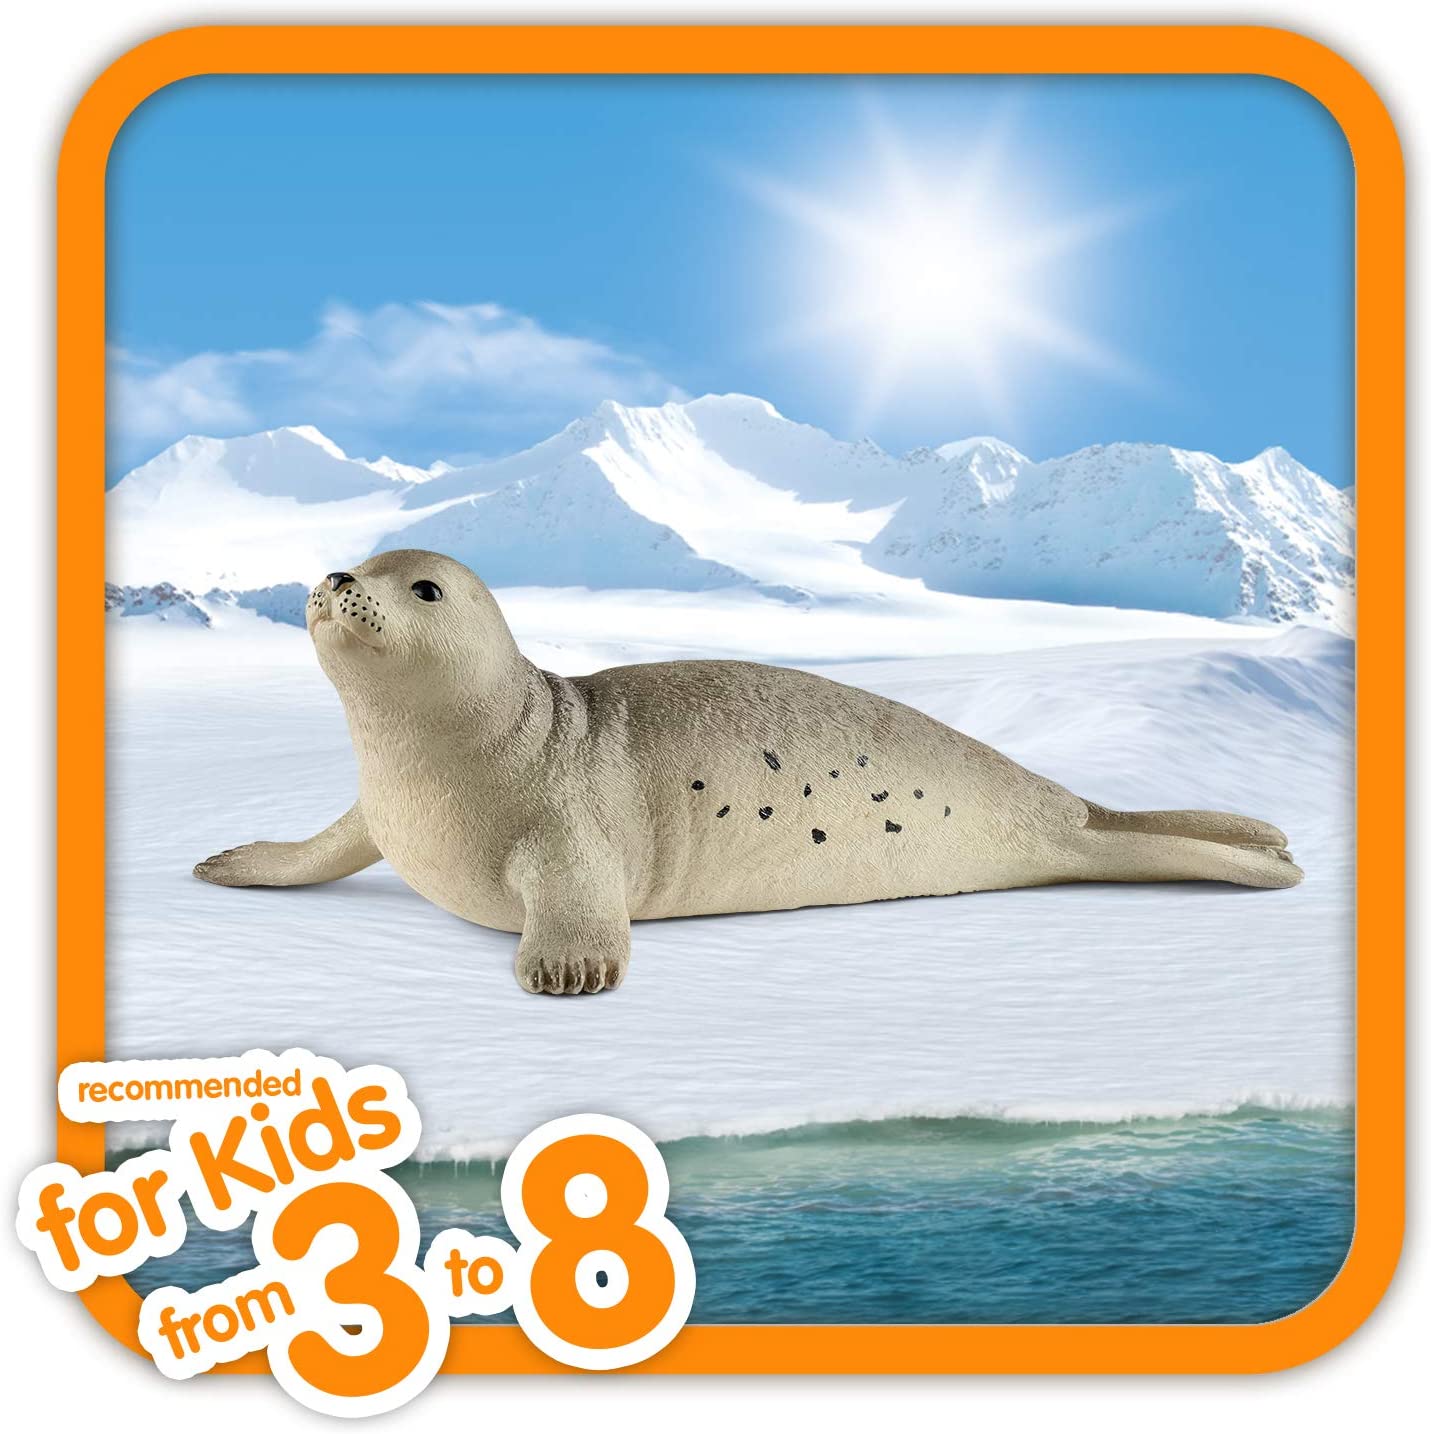 Schleich Seal